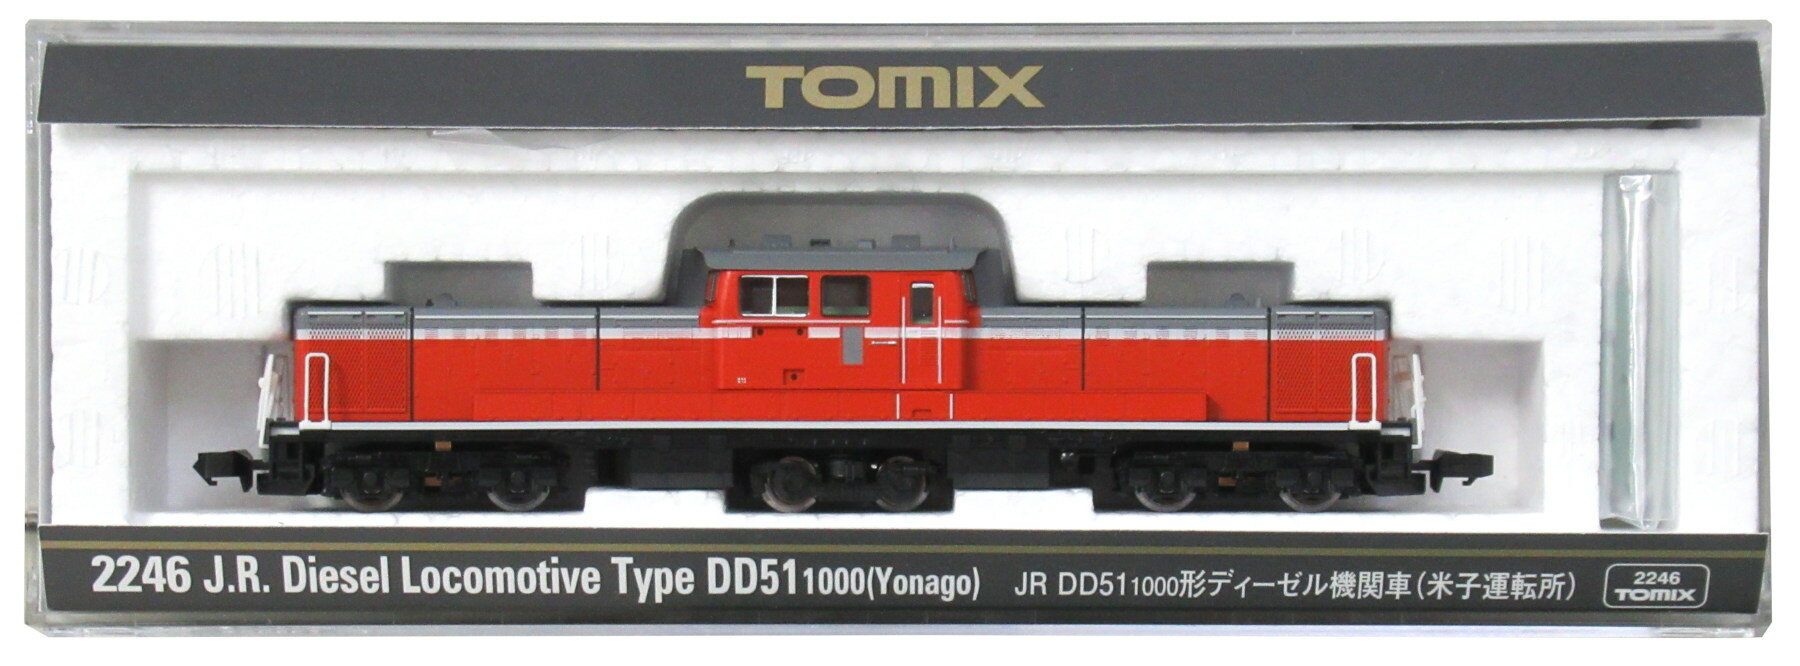 【中古】Nゲージ TOMIX(トミックス) 2246 JR DD51-1000形 ディーゼル機関車 (米子運転所) 【A】